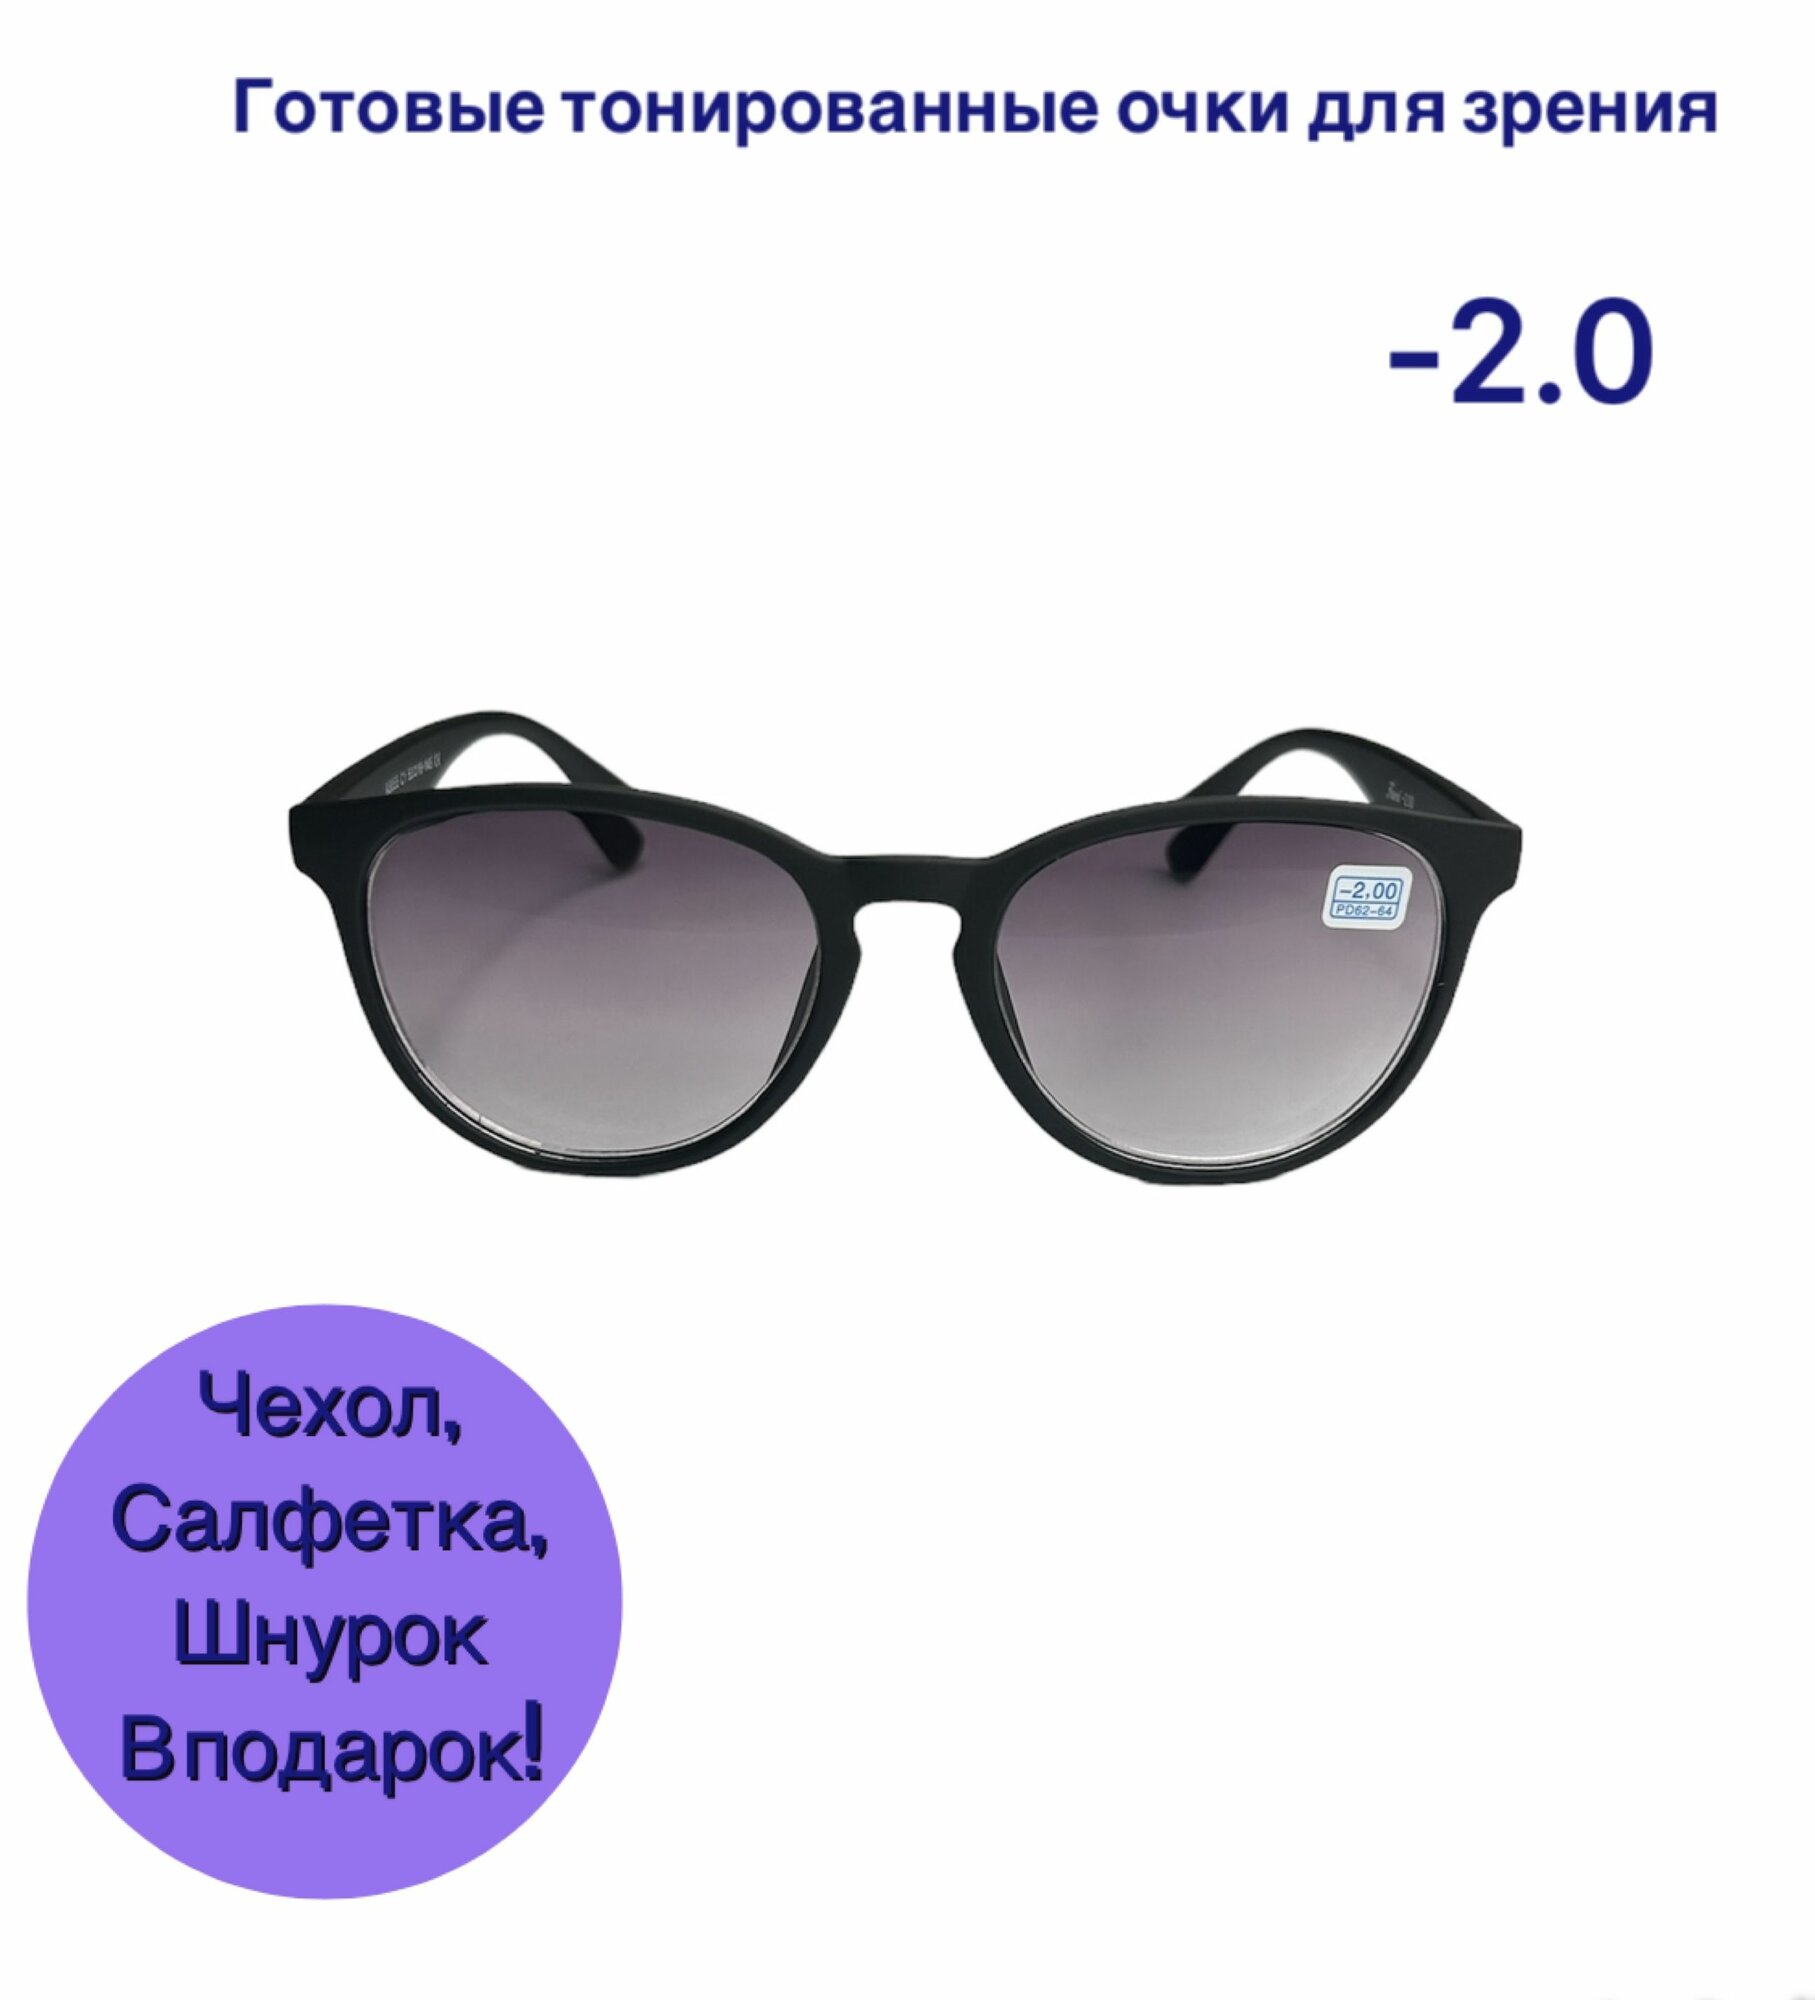 Готовые тонированные очки для зрения -2 затемненные очки для дали очки минус с диоптриями коррегирующие очки